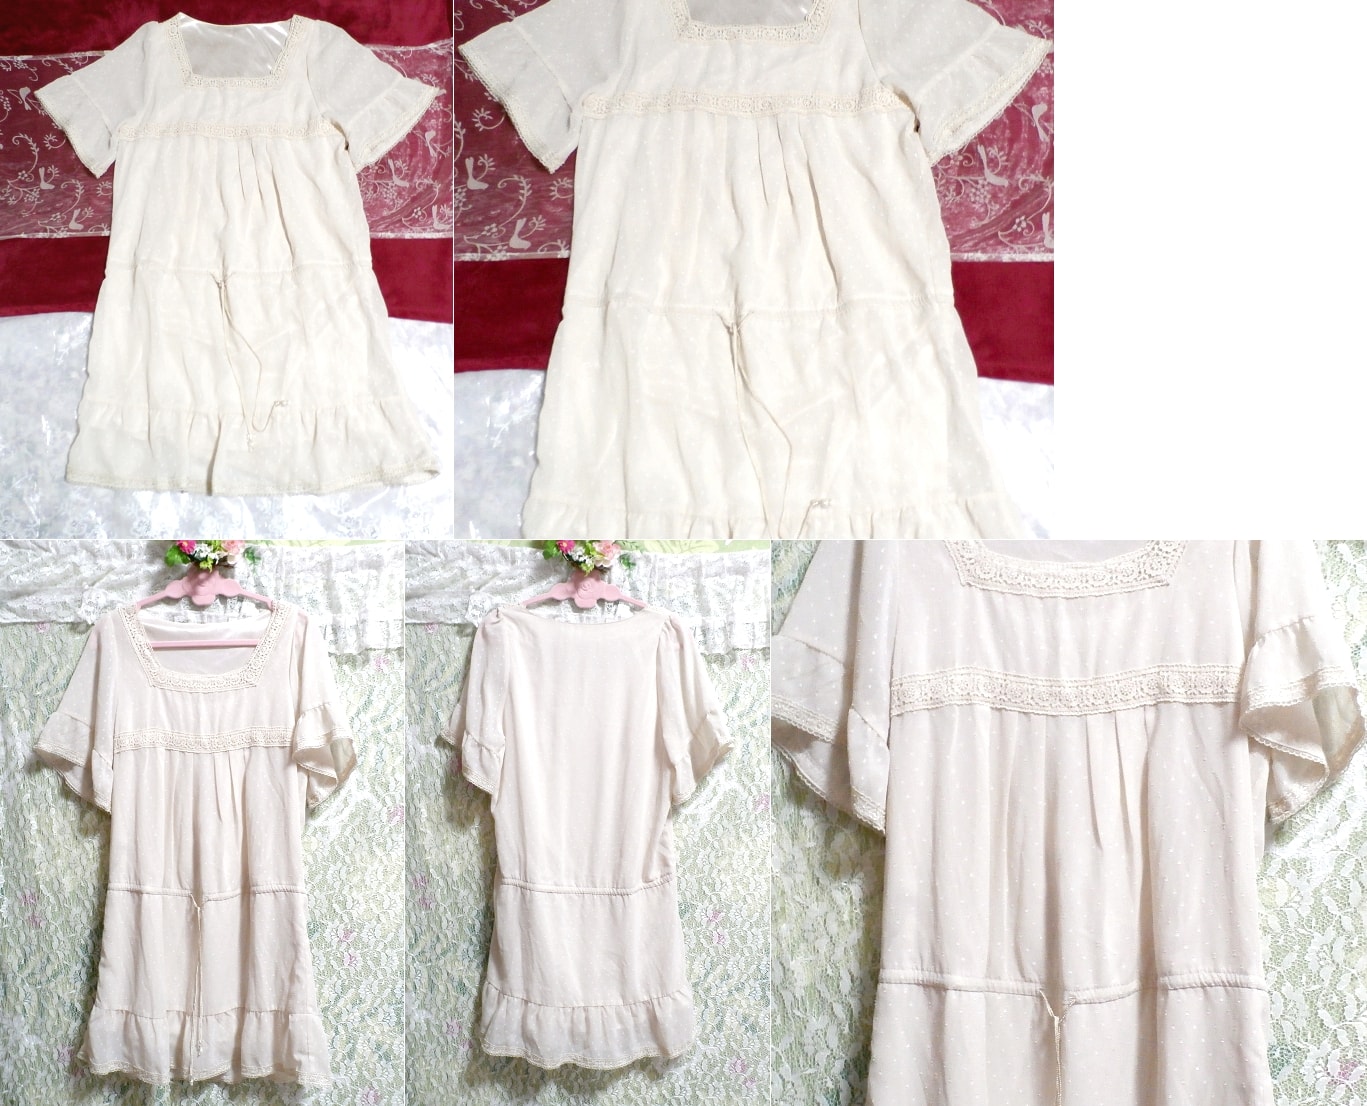 白フローラルホワイトシフォンネグリジェチュニックワンピース White floral white chiffon negligee tunic dress, チュニック, 半袖, Mサイズ